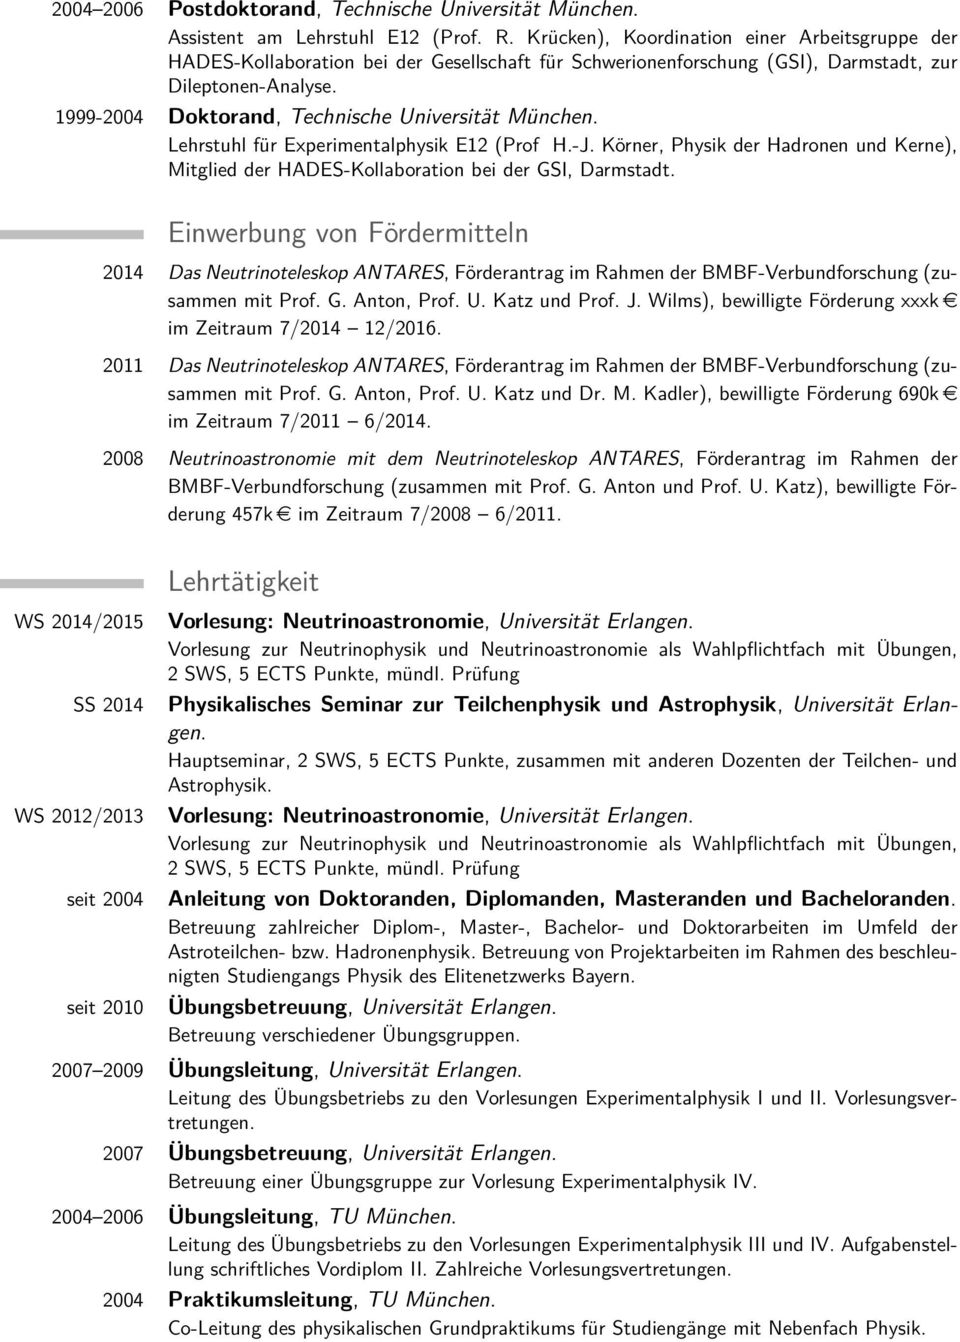 1999-2004 Doktorand, Technische Universität München. Lehrstuhl für Experimentalphysik E12 (Prof H.-J. Körner, Physik der Hadronen und Kerne), Mitglied der HADES-Kollaboration bei der GSI, Darmstadt.